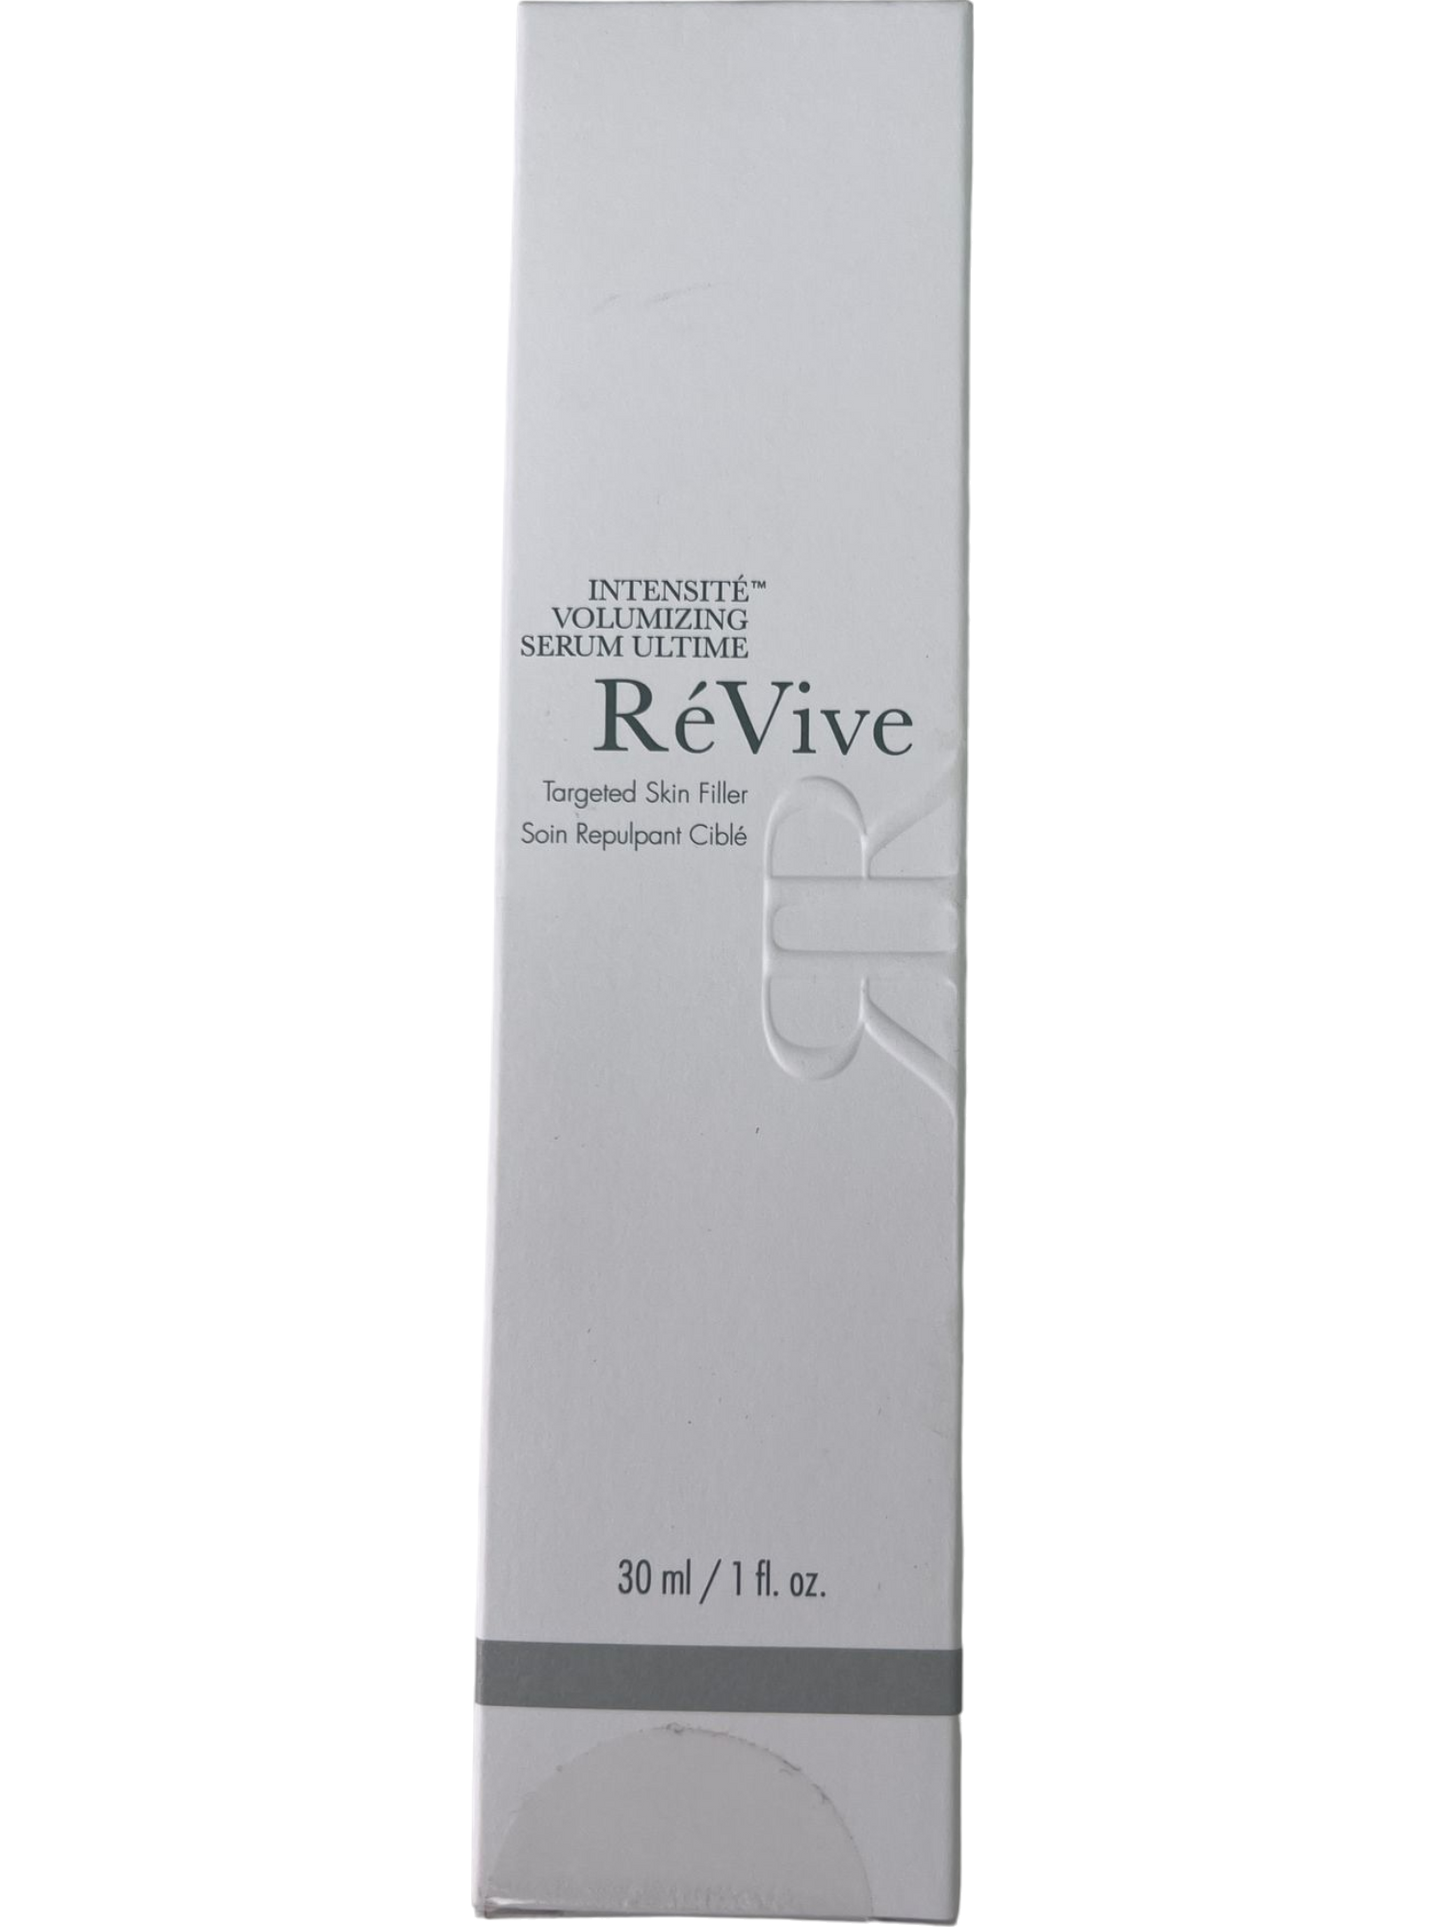 ReVive Intensite Volumizing Serum Ultime Targeted Skin Filler 30ml